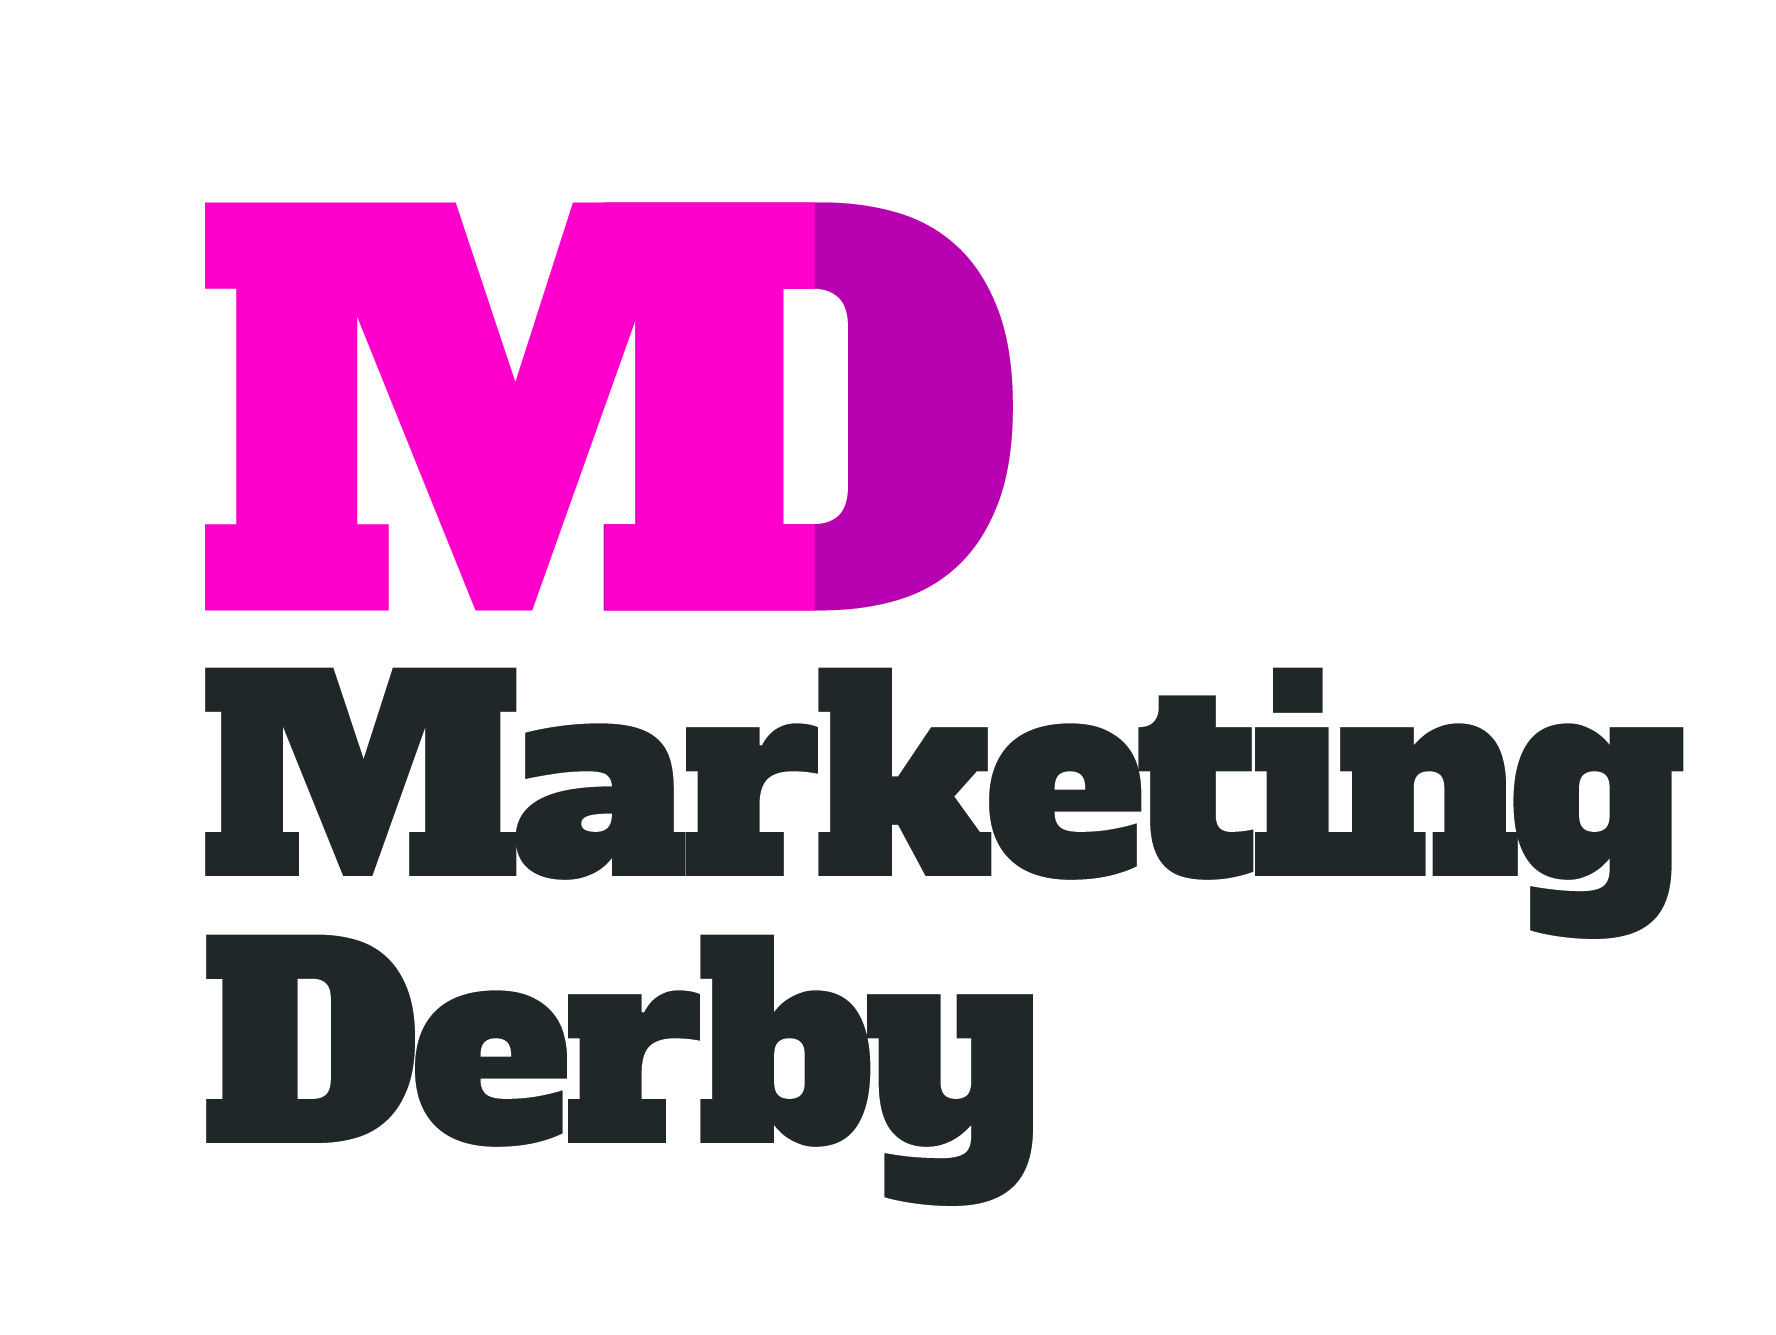 Marketing Derby logo